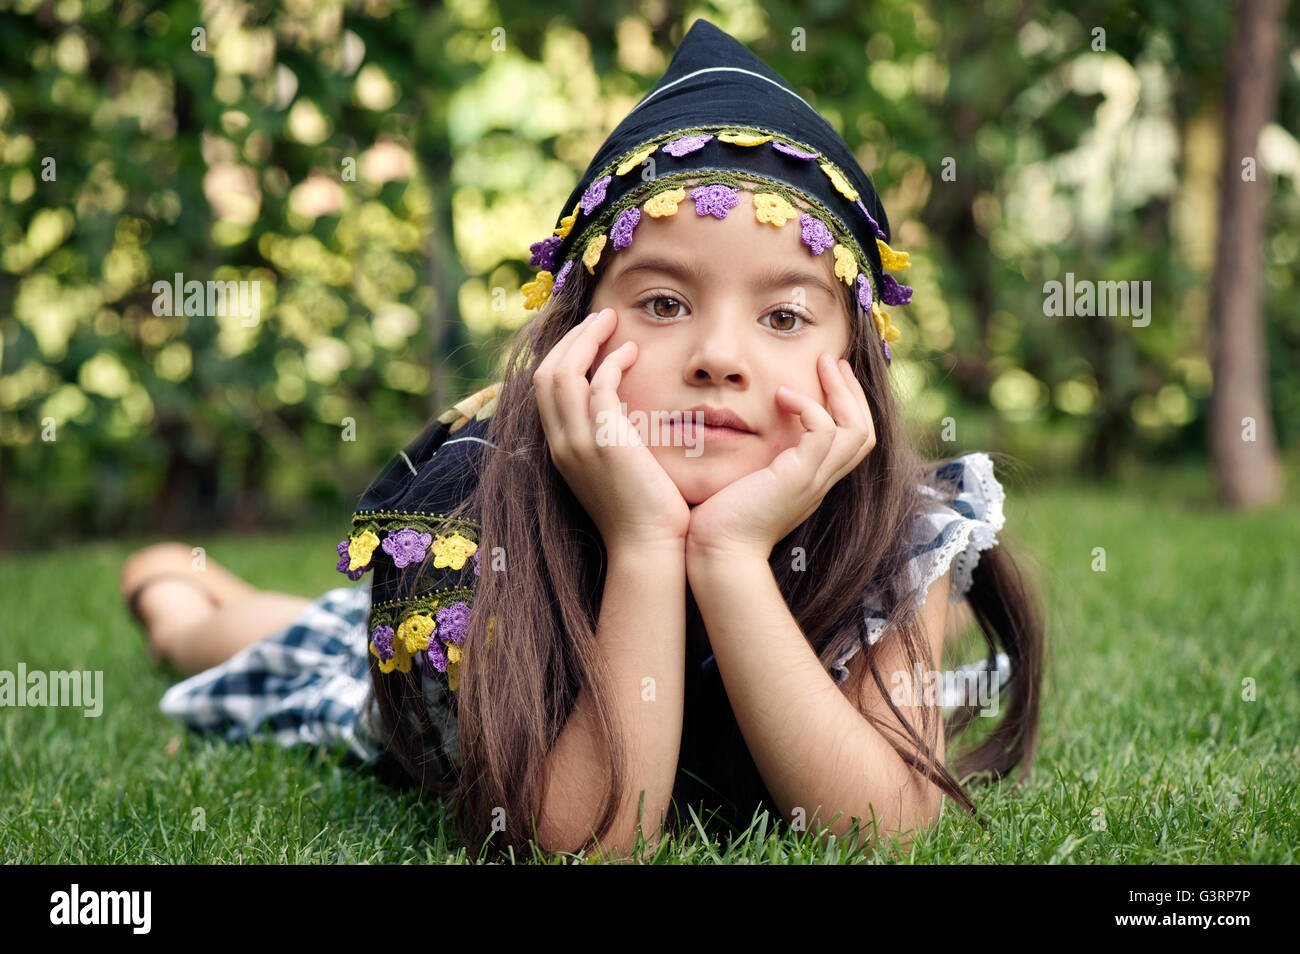 Kleines Mädchen mit Kopftuch auf dem Rasen liegend Stockfoto